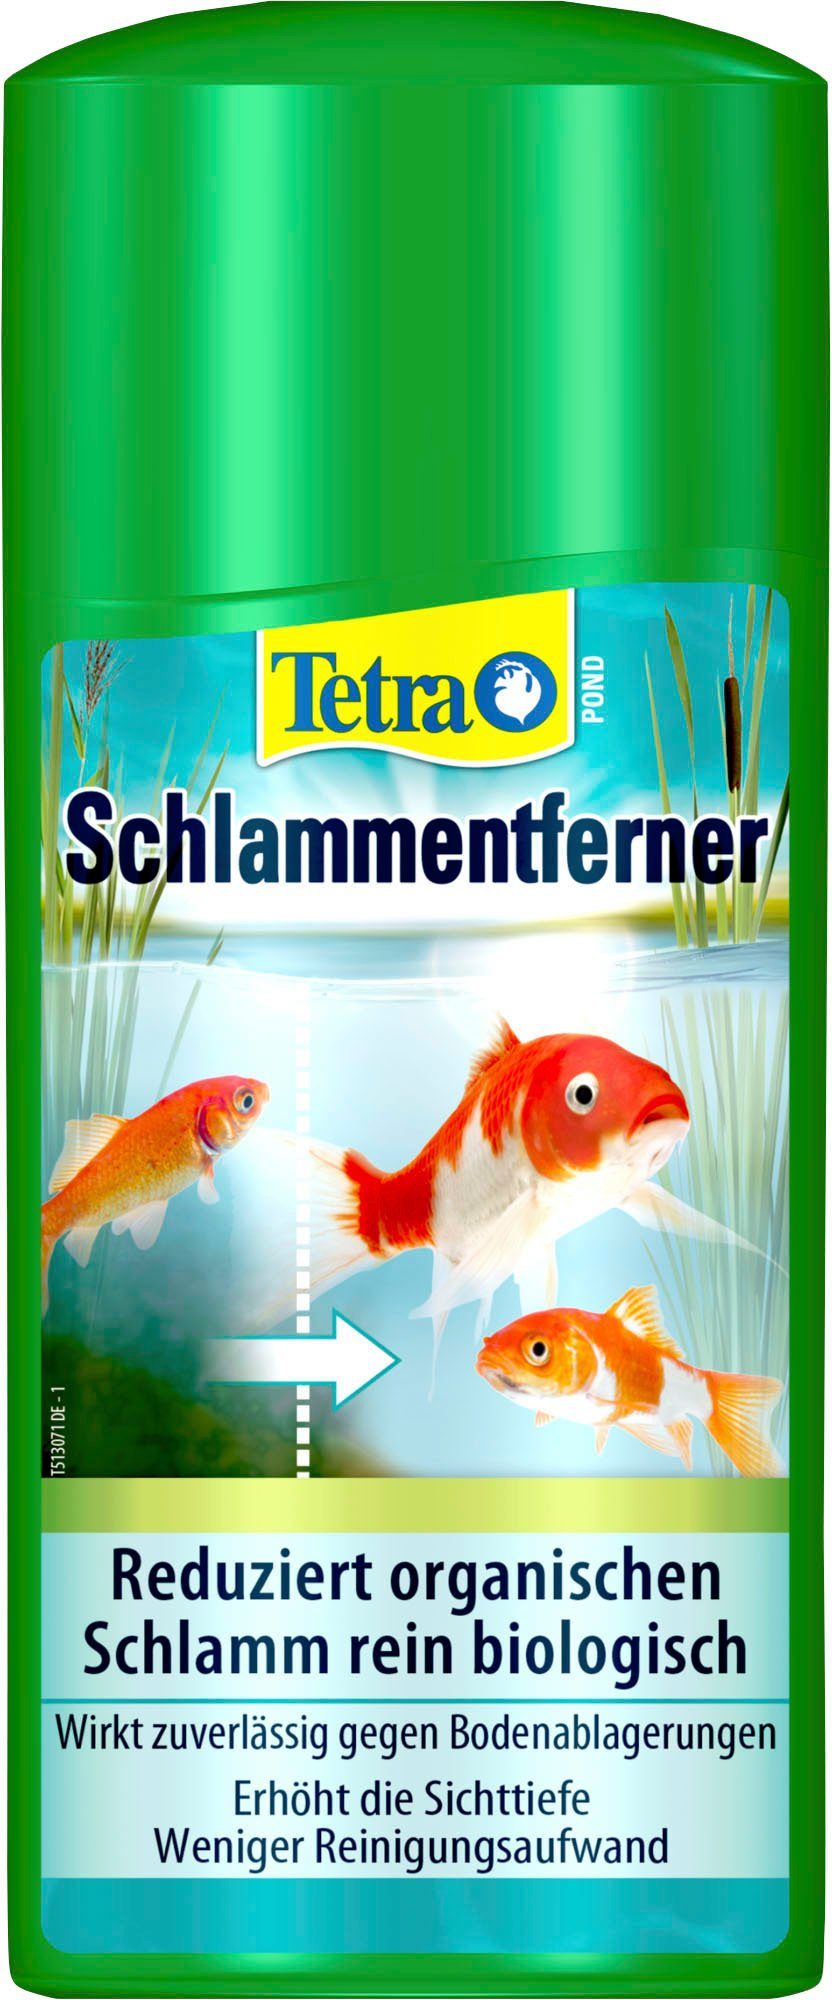 Tetra Teichpflege Tetra Pond Schlammentferner, 500 ml